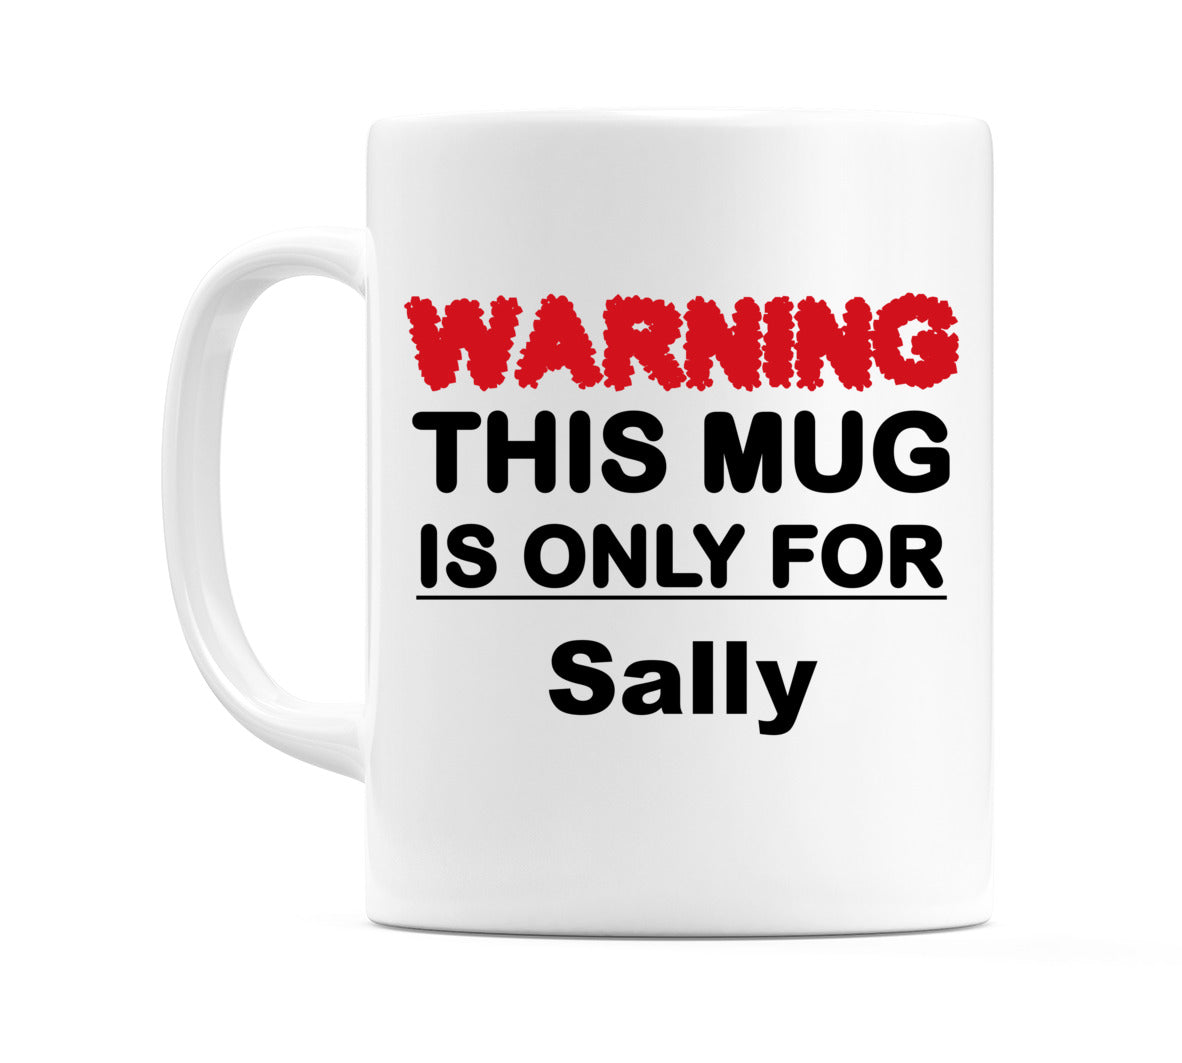 Warning This Mug is ONLY for Sally Mug